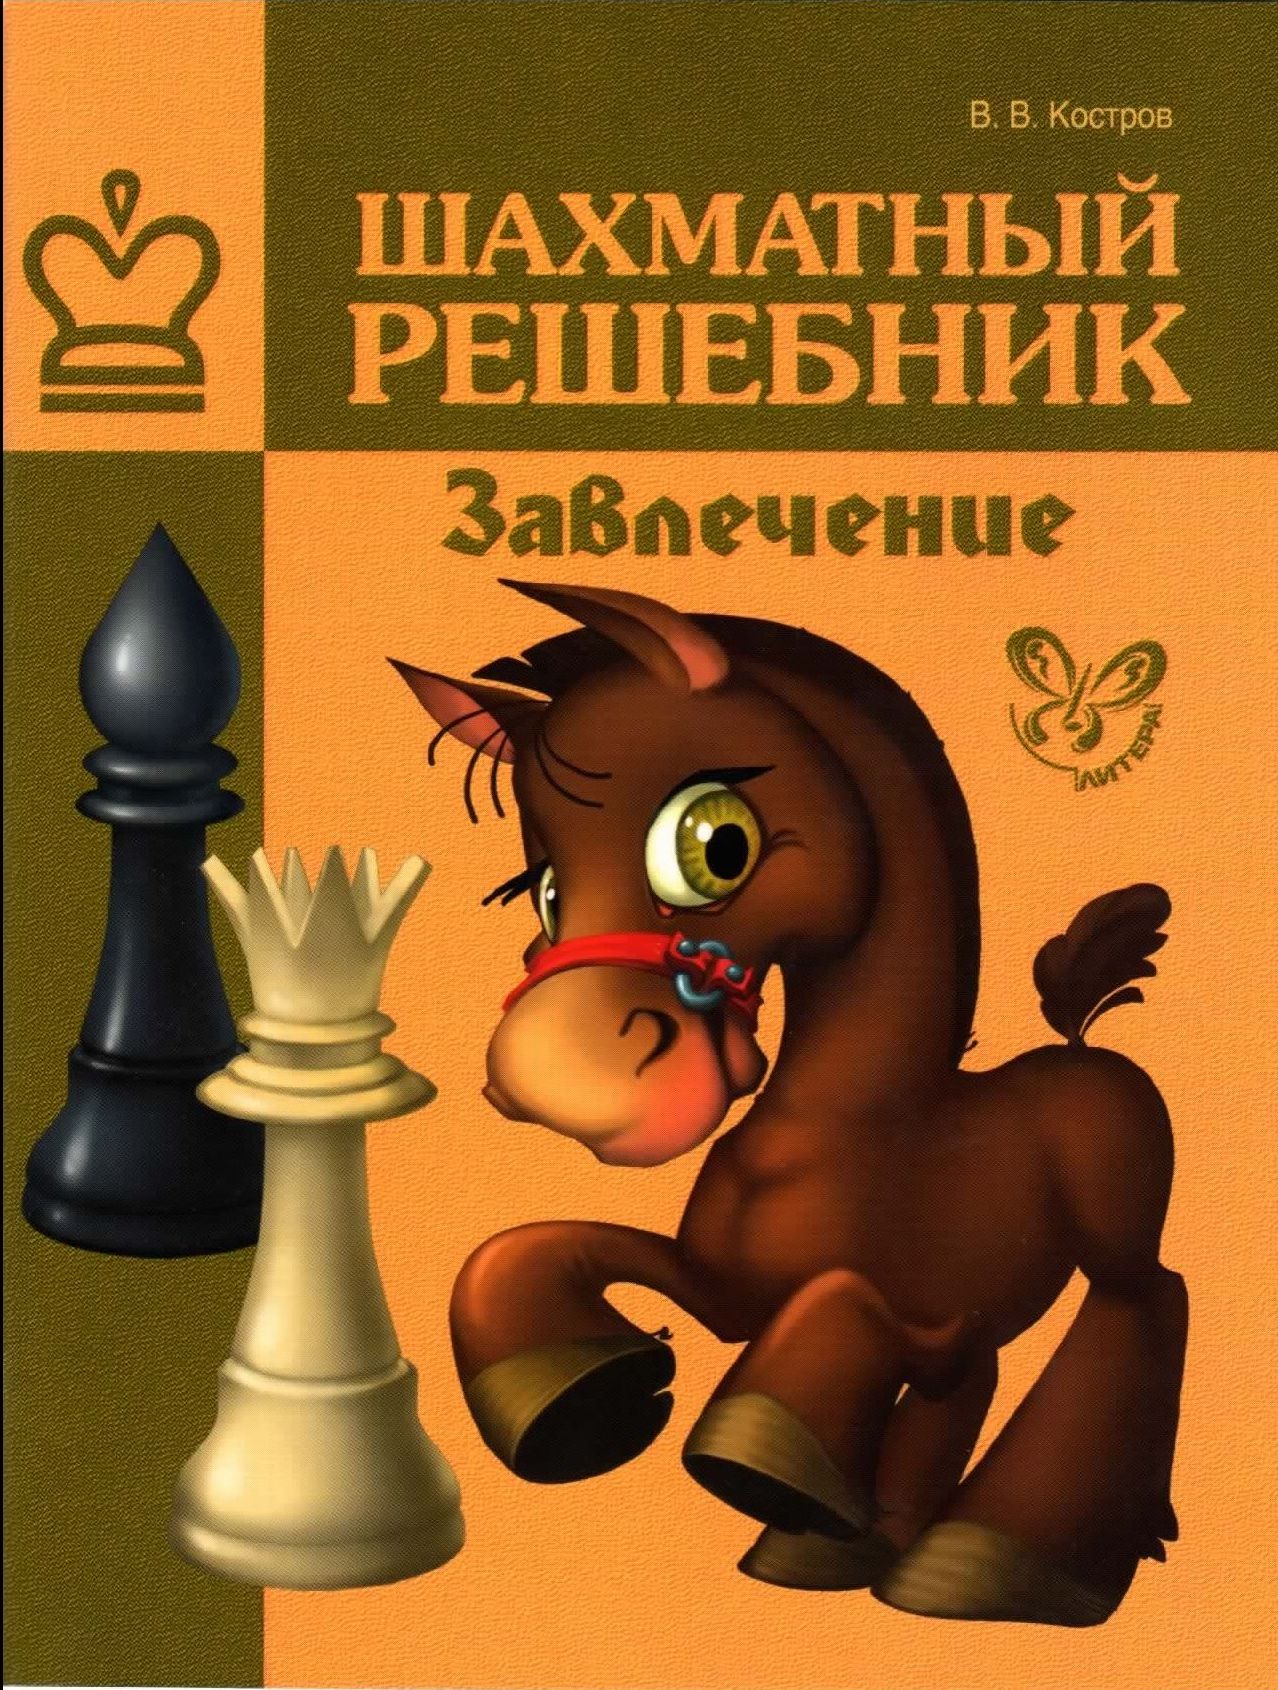 Сборник шахматных задач Завлечение